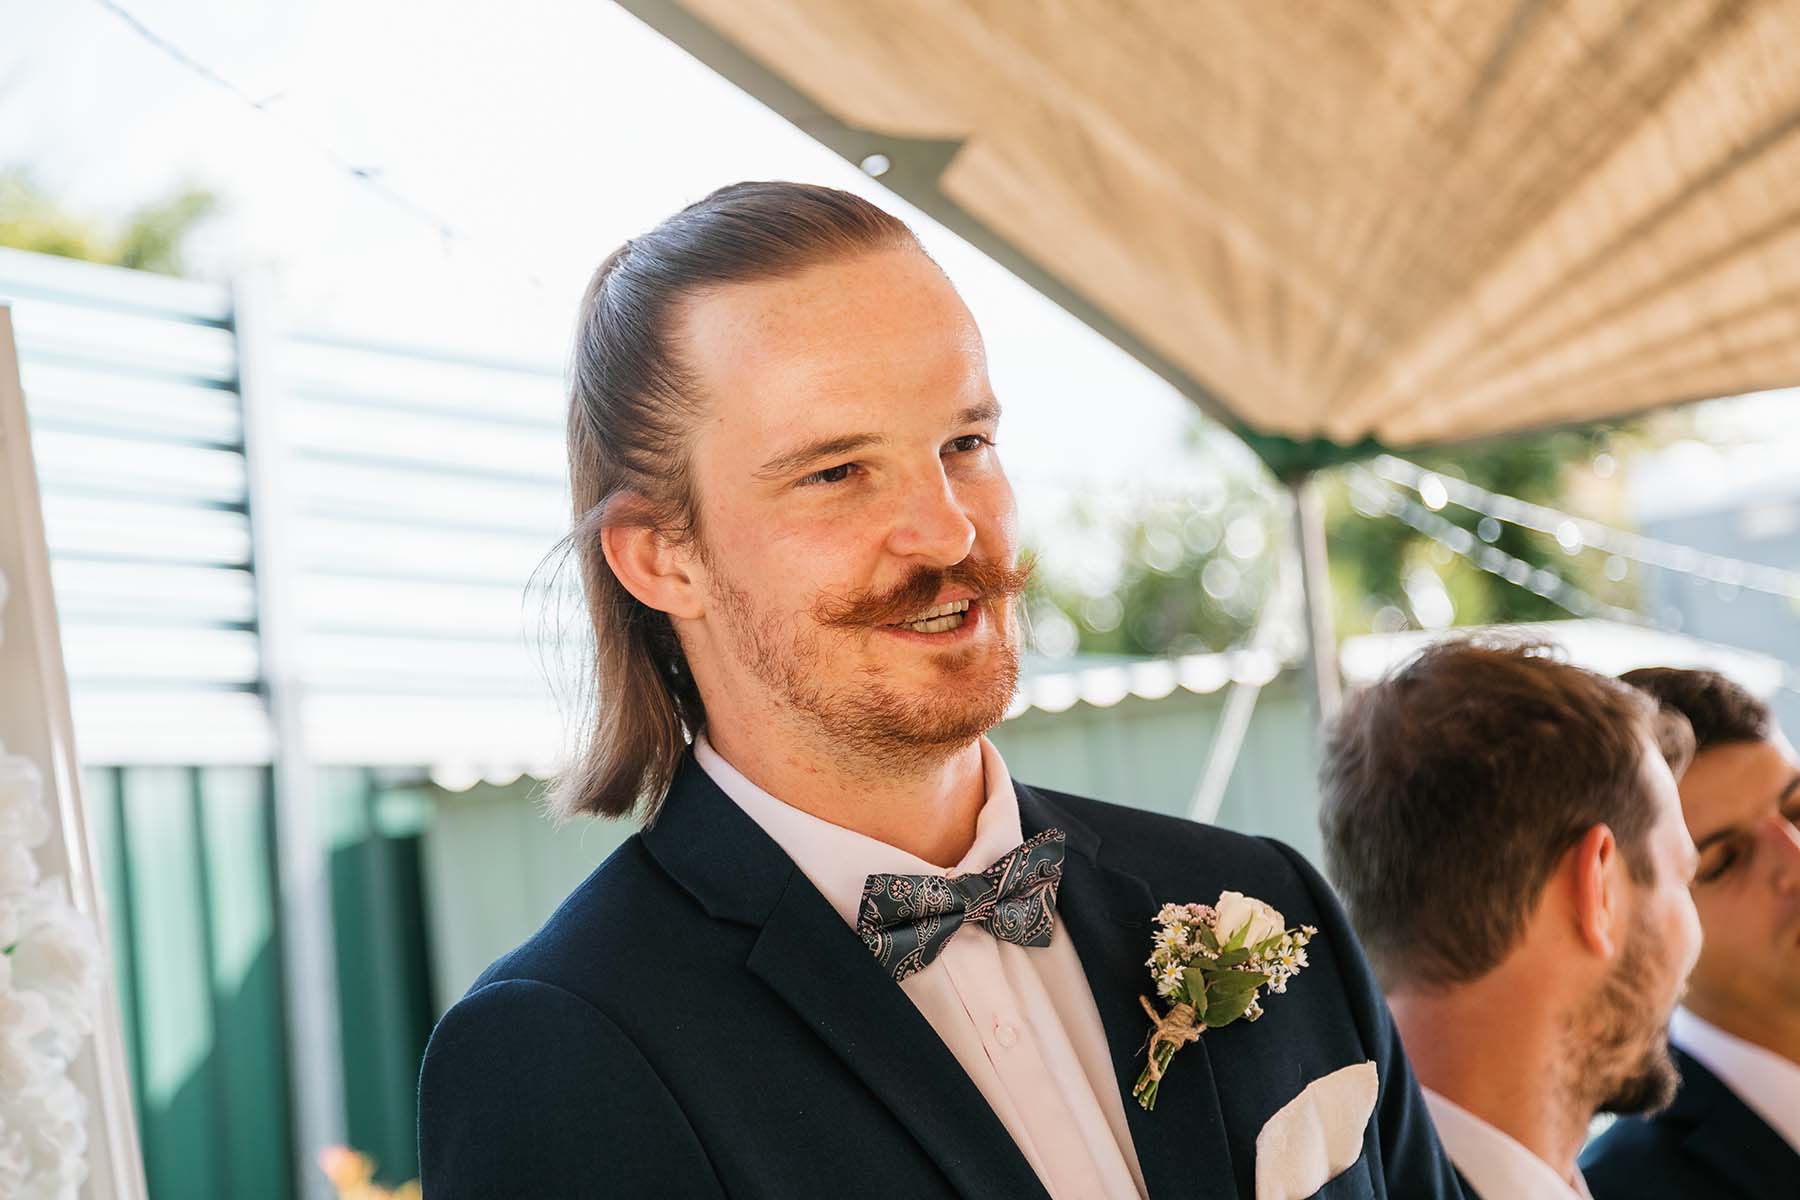 Wedding Photography - groom